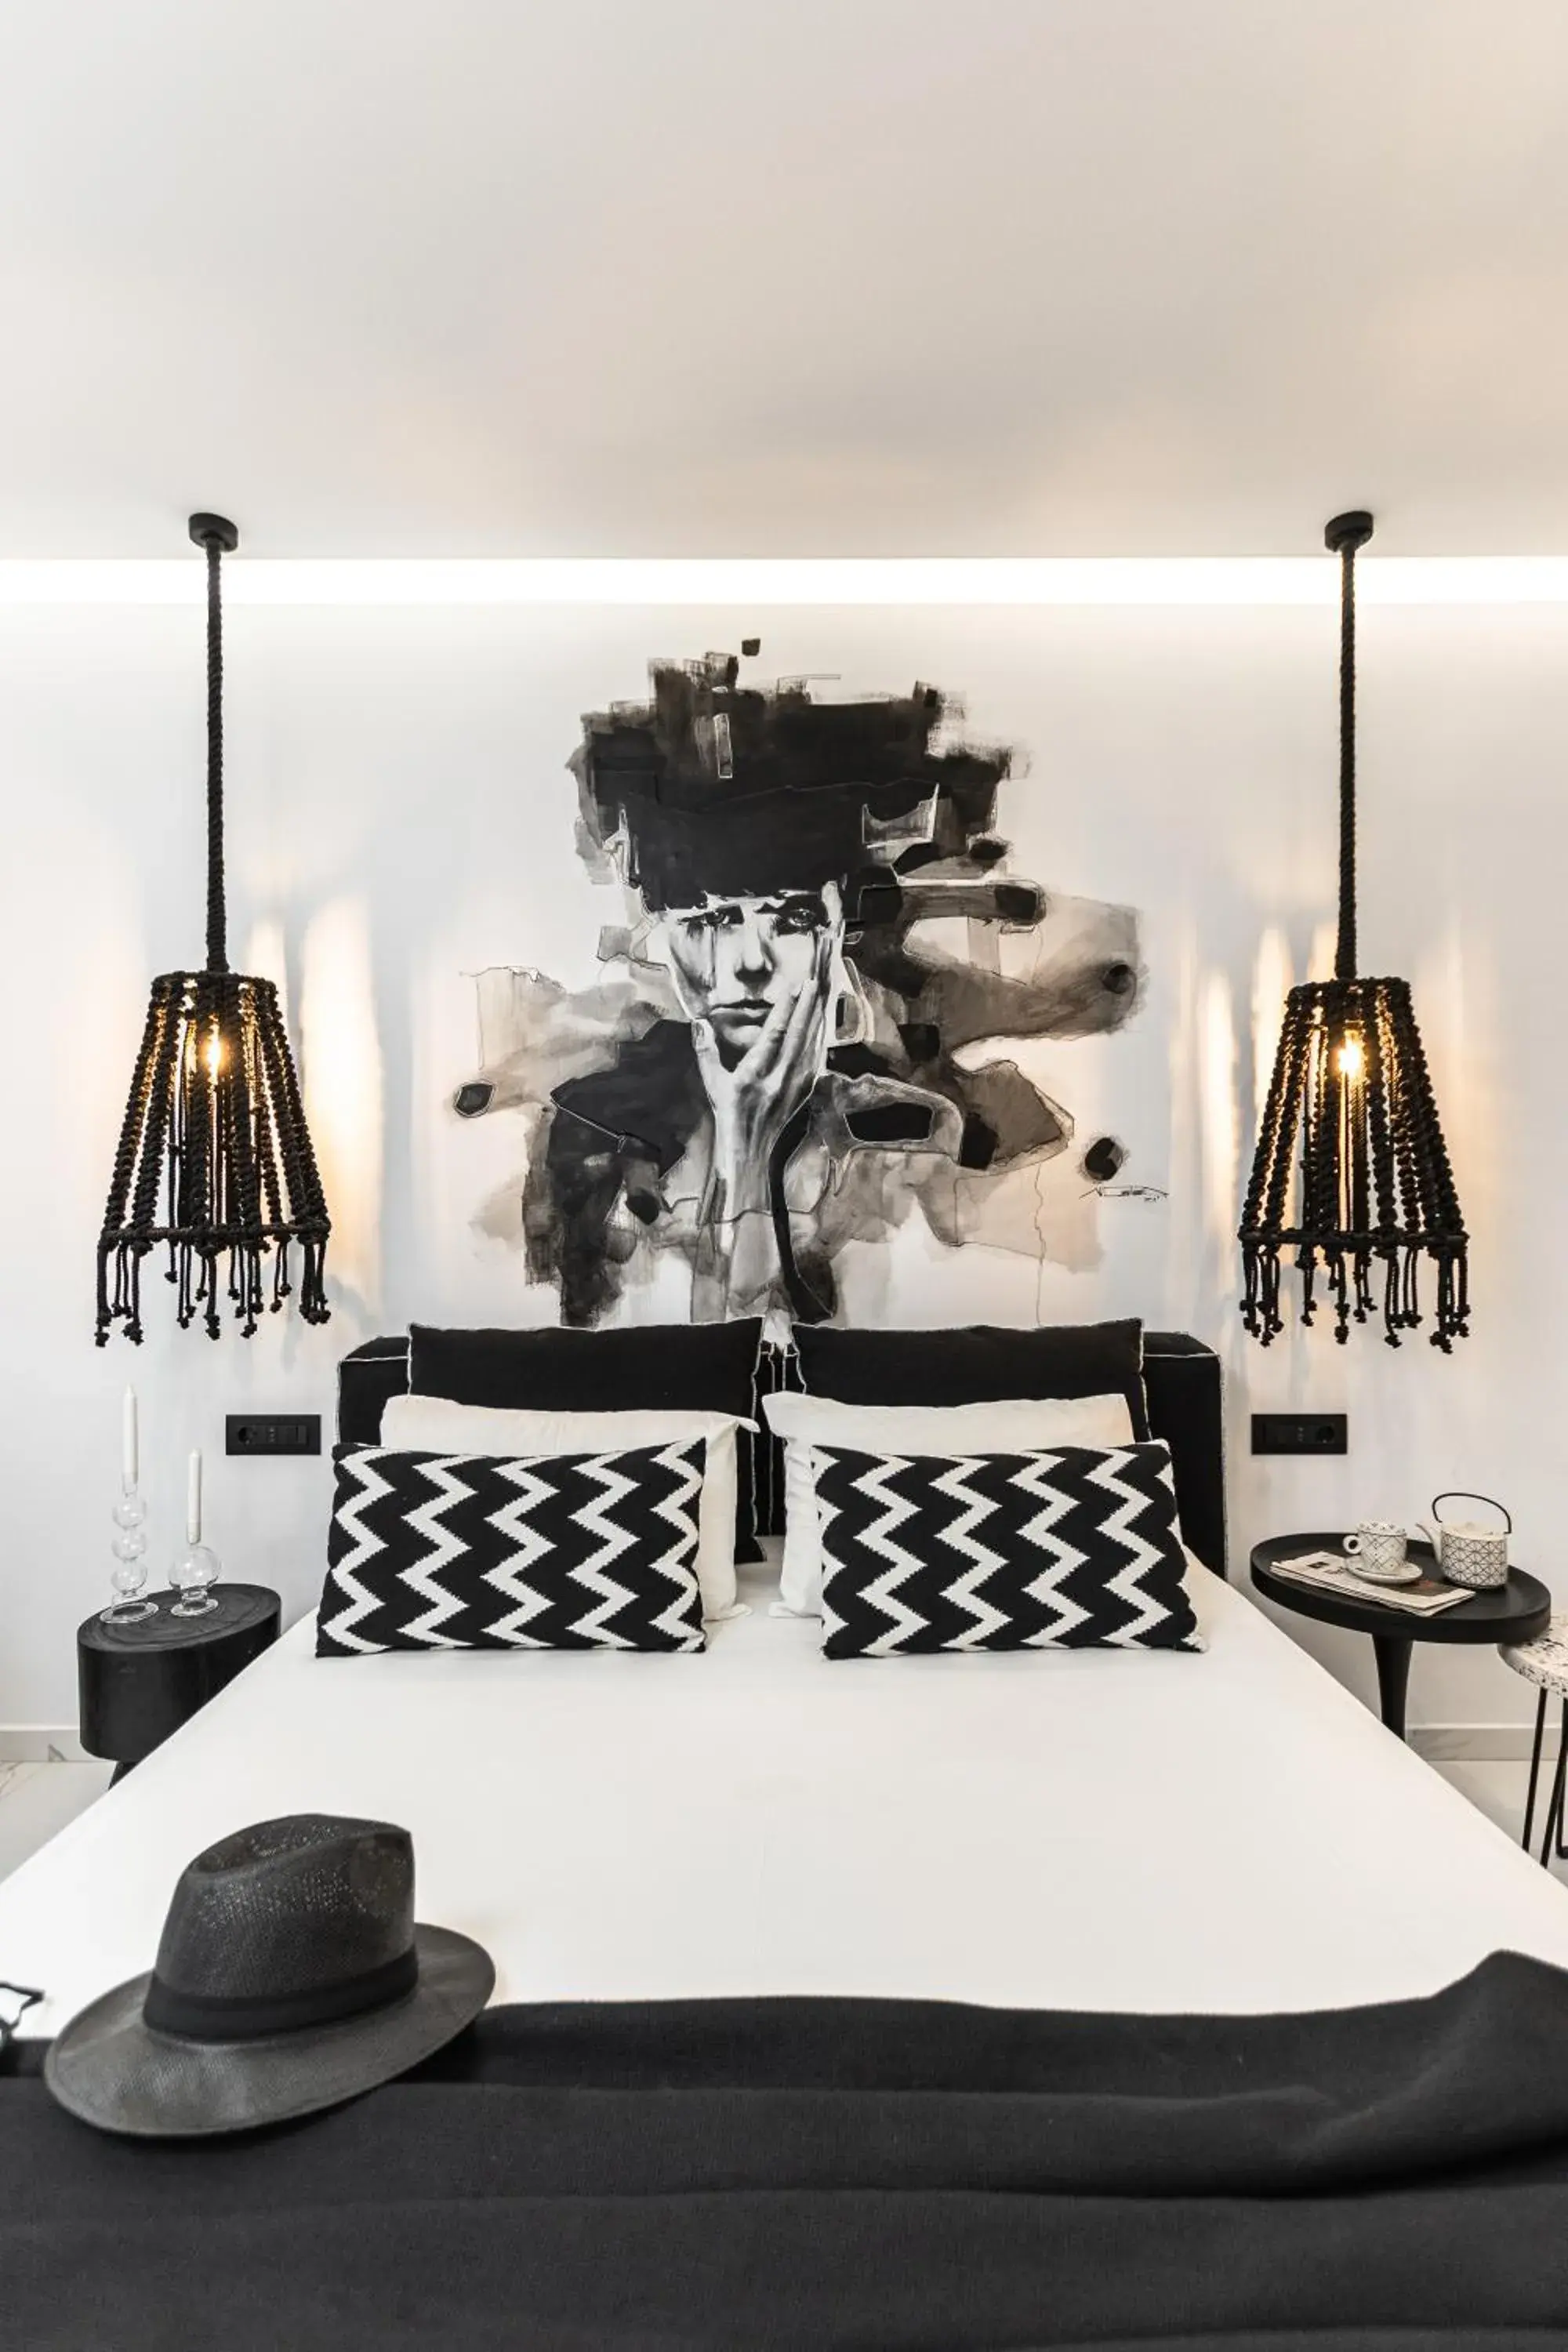 Bed in Hotel Palatia